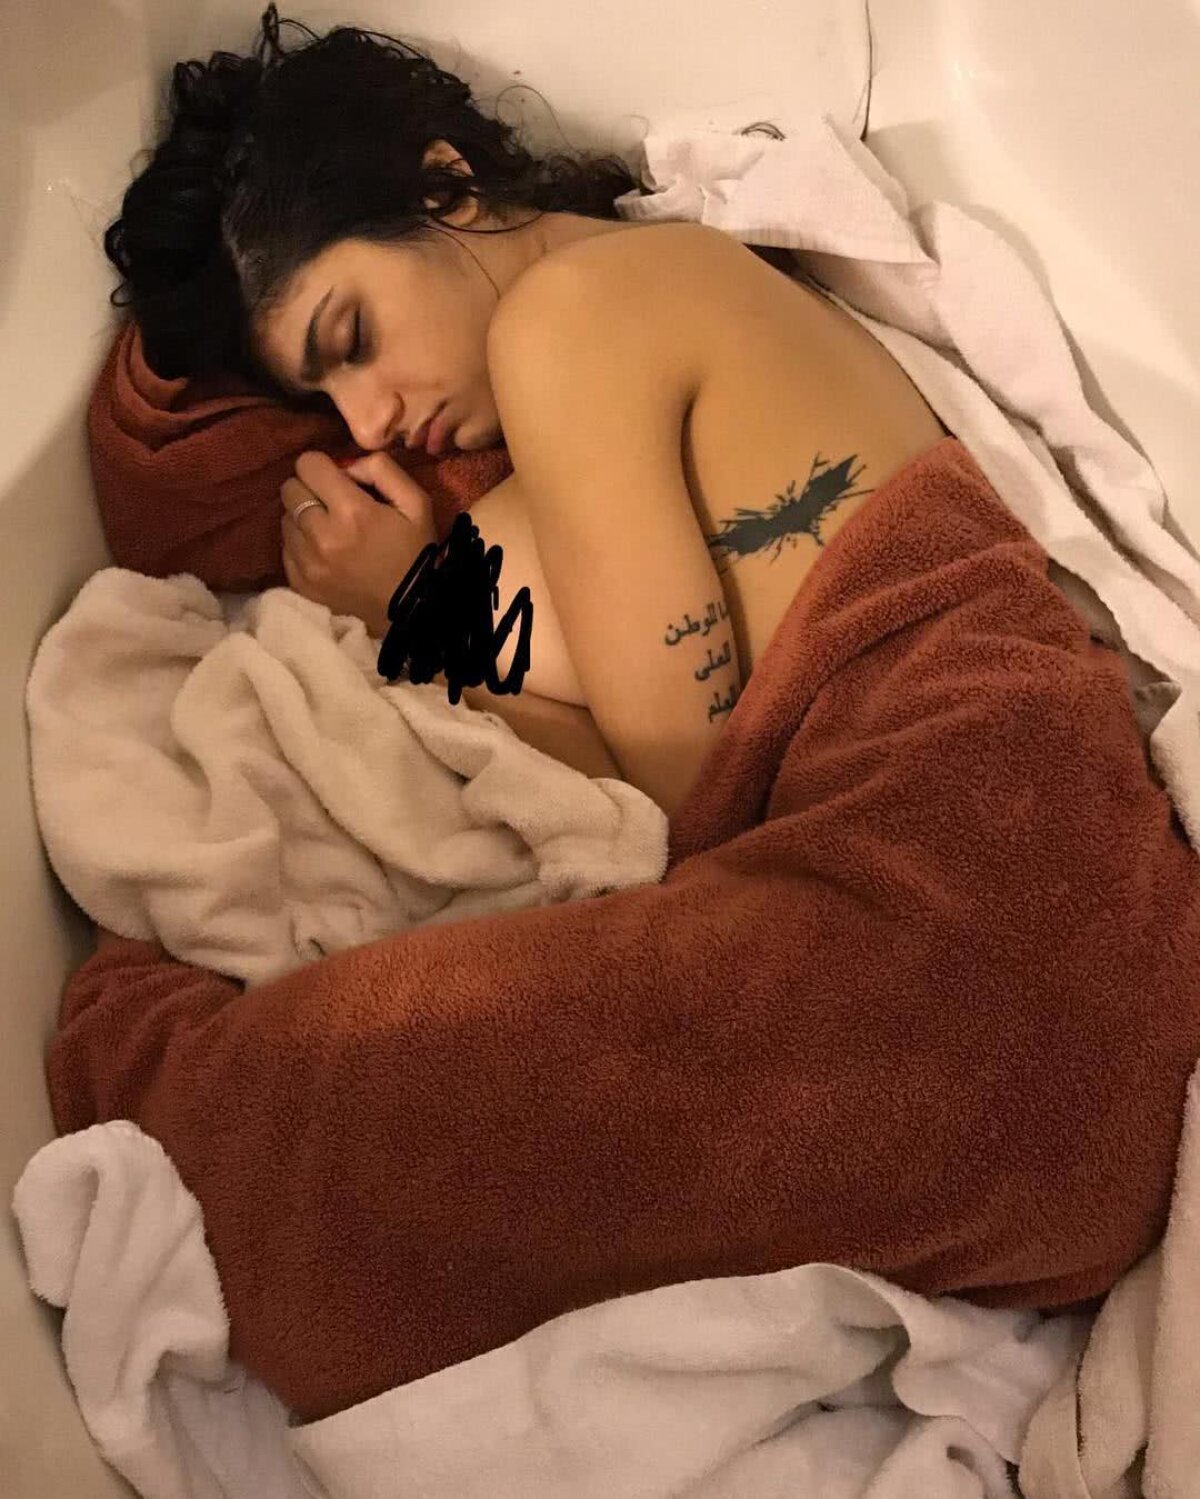 FOTO Mia Khalifa a publicat pe Instagram cea mai jenantă fotografie a sa: e goală în cadă după o noapte de beție!